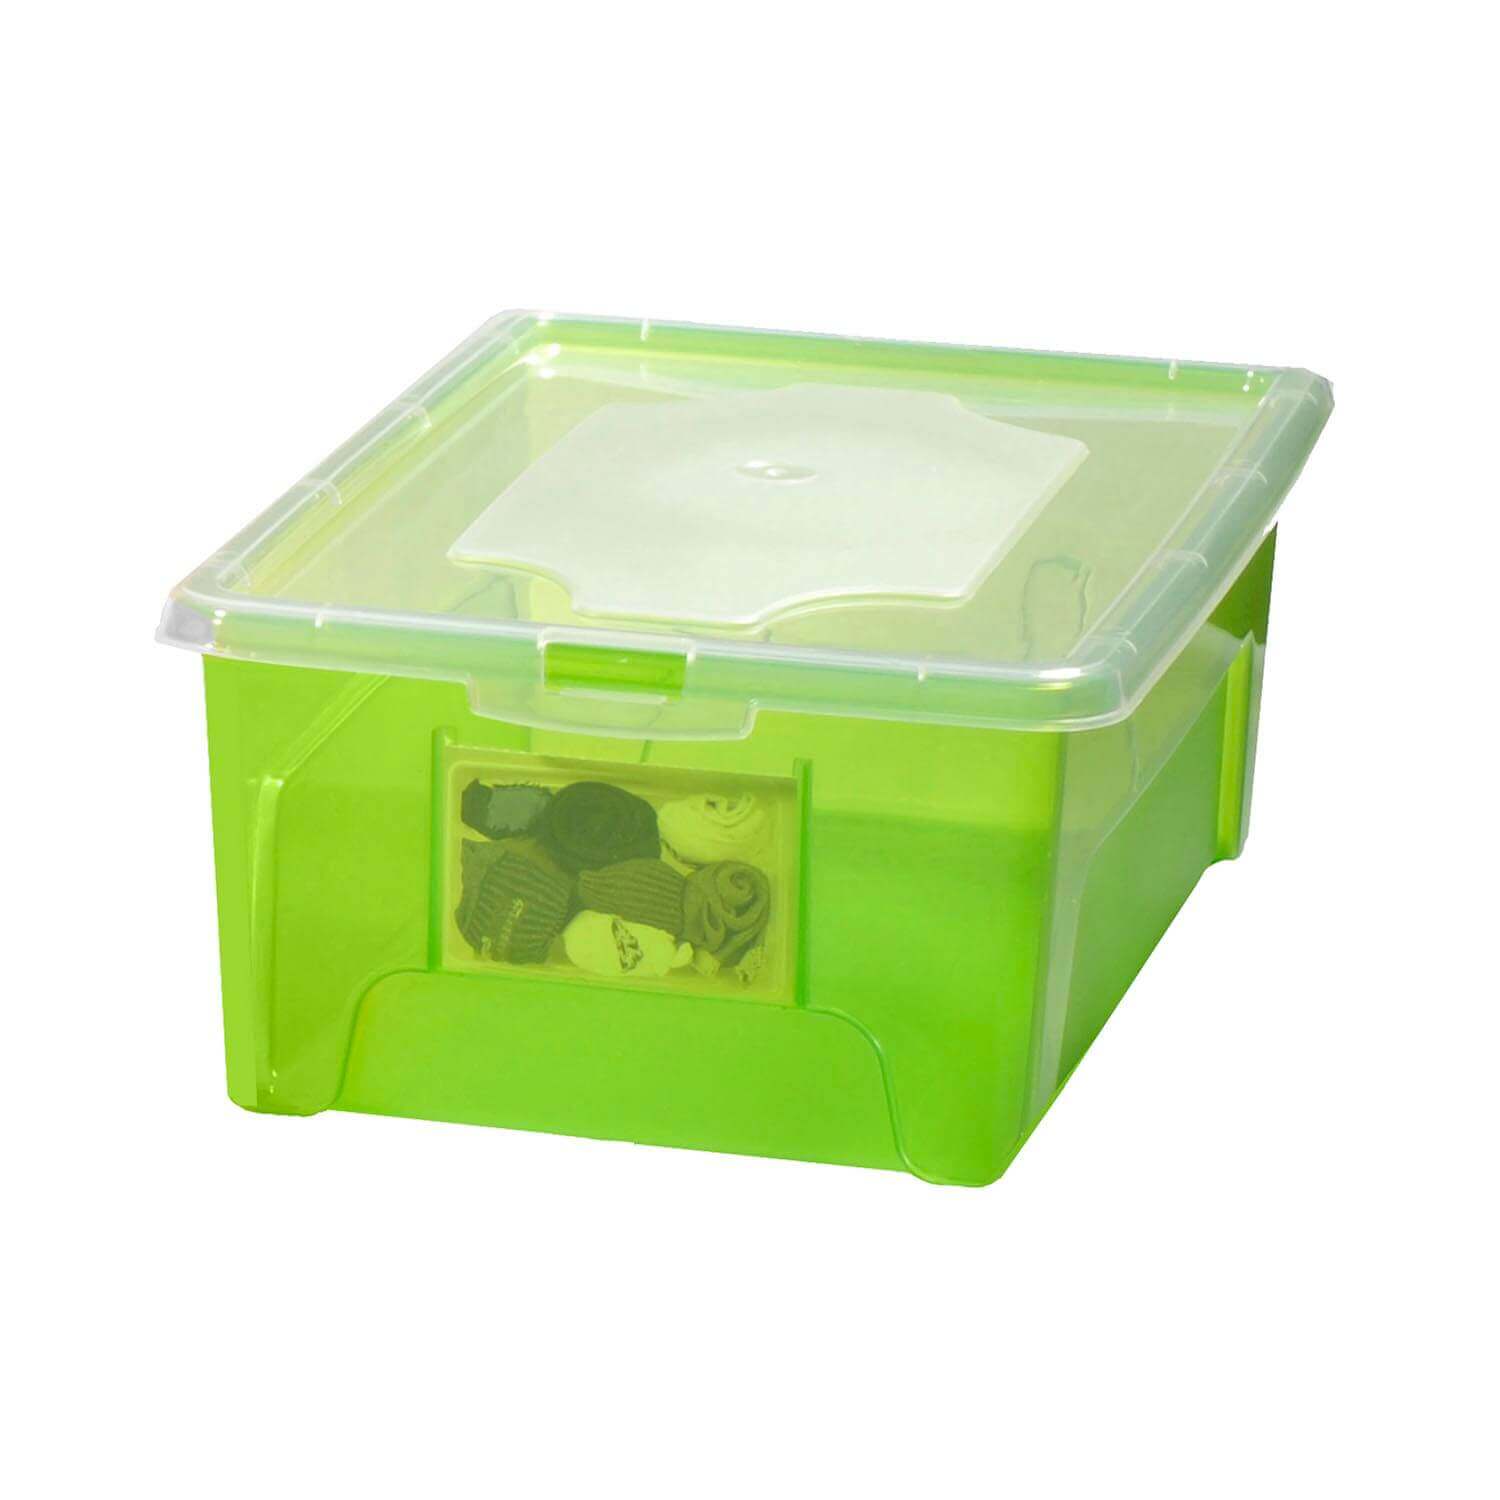 Aufbewahrungsbox "Easybox" 10 L in grün, Kunststoffbox